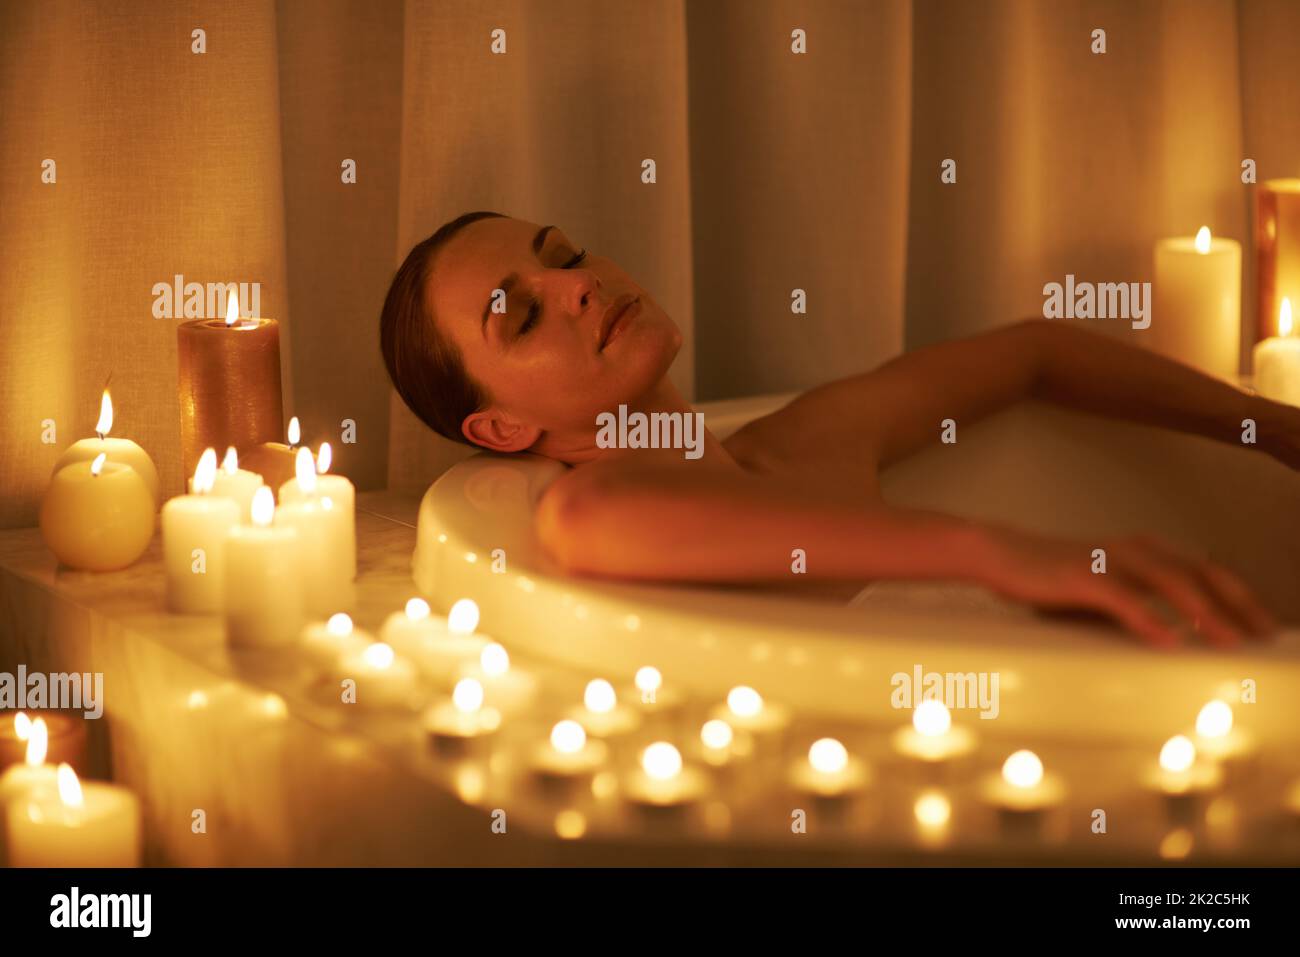 Die Sorgen der Wochen wuschen weg. Eine kurze Aufnahme einer wunderschönen Frau, die sich in einem bei Kerzenschein beleuchteten Bad entspannt. Stockfoto